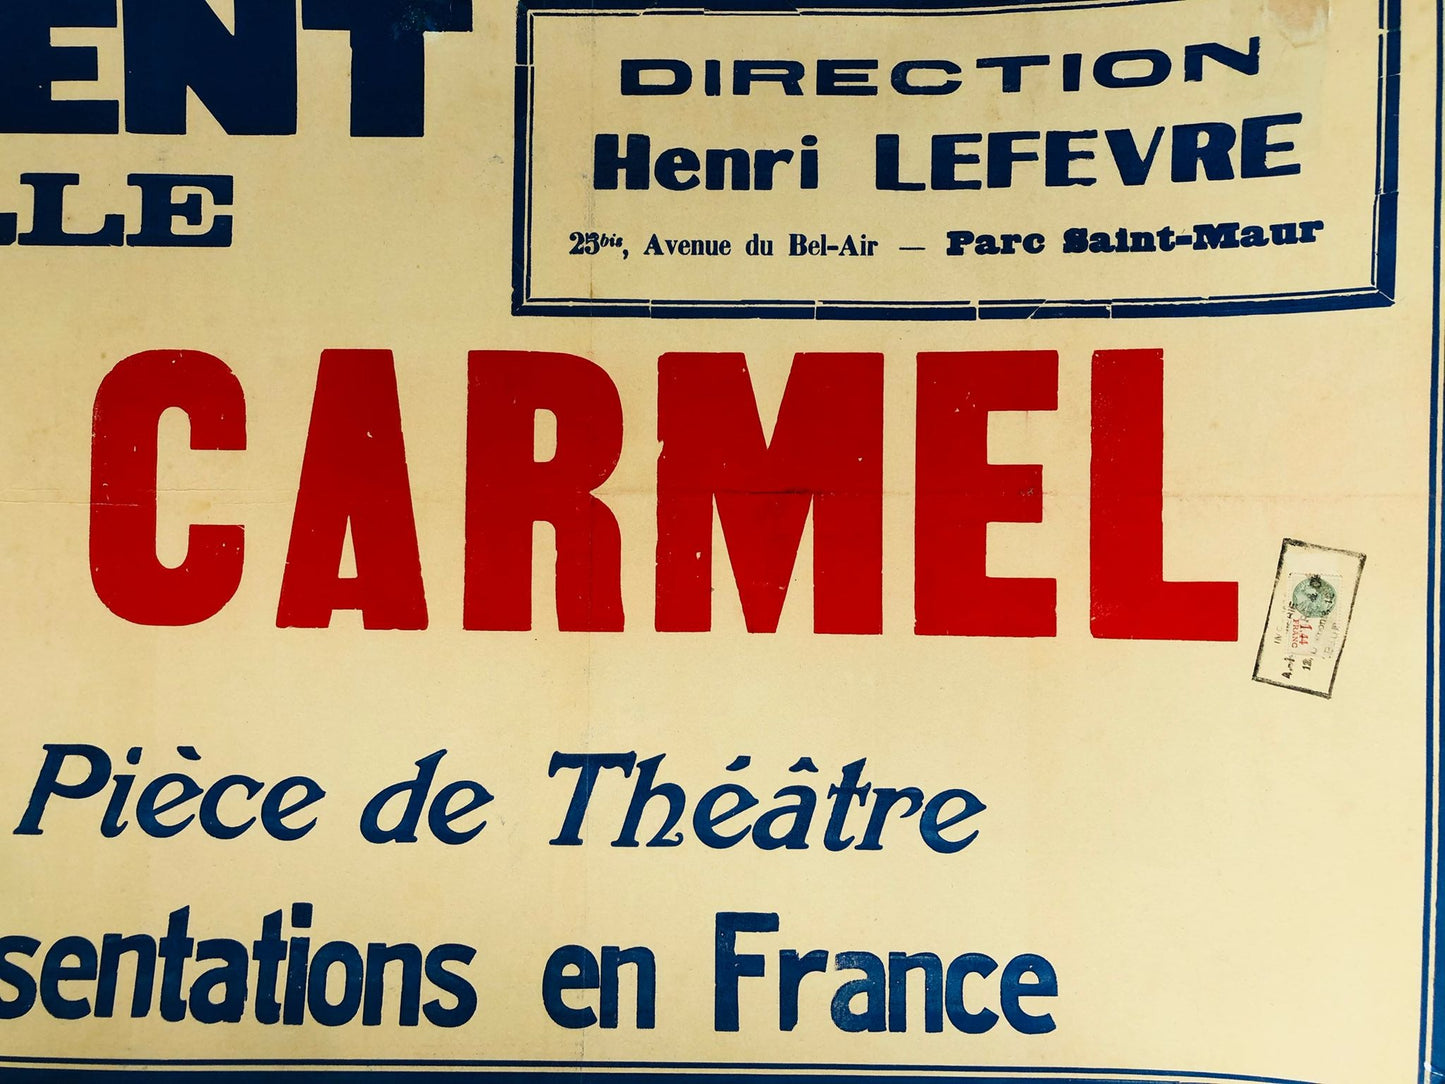 La Rose Du Carmel Theatre Bus Poster